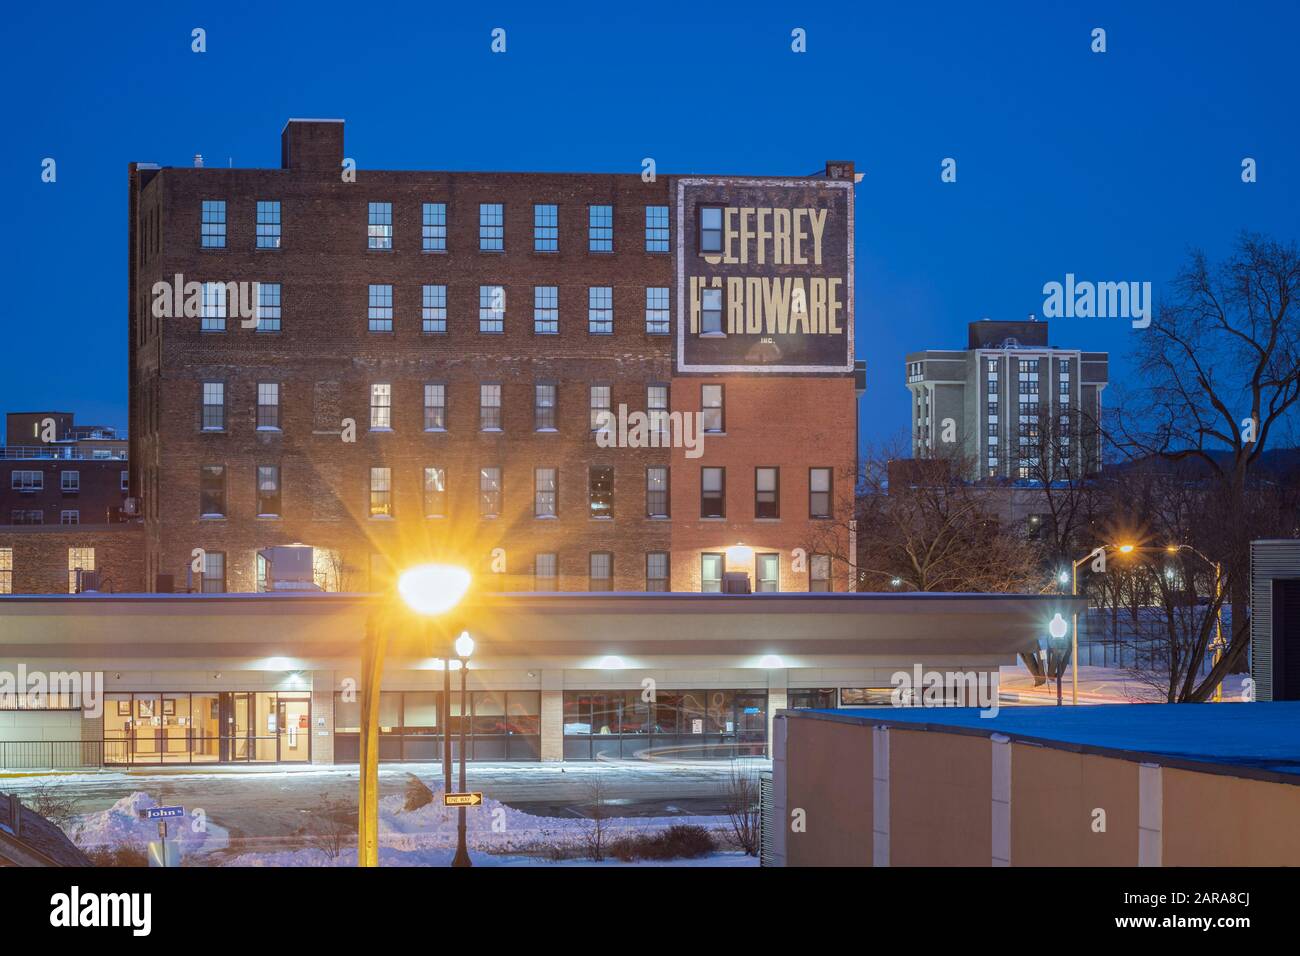 Utica, NEW YORK - 20. JANUAR 2012: Night View of Whiffen Robyat Building, Im National Register of Historic Platces, In der 327 Bleecker St aufgeführt, Stockfoto